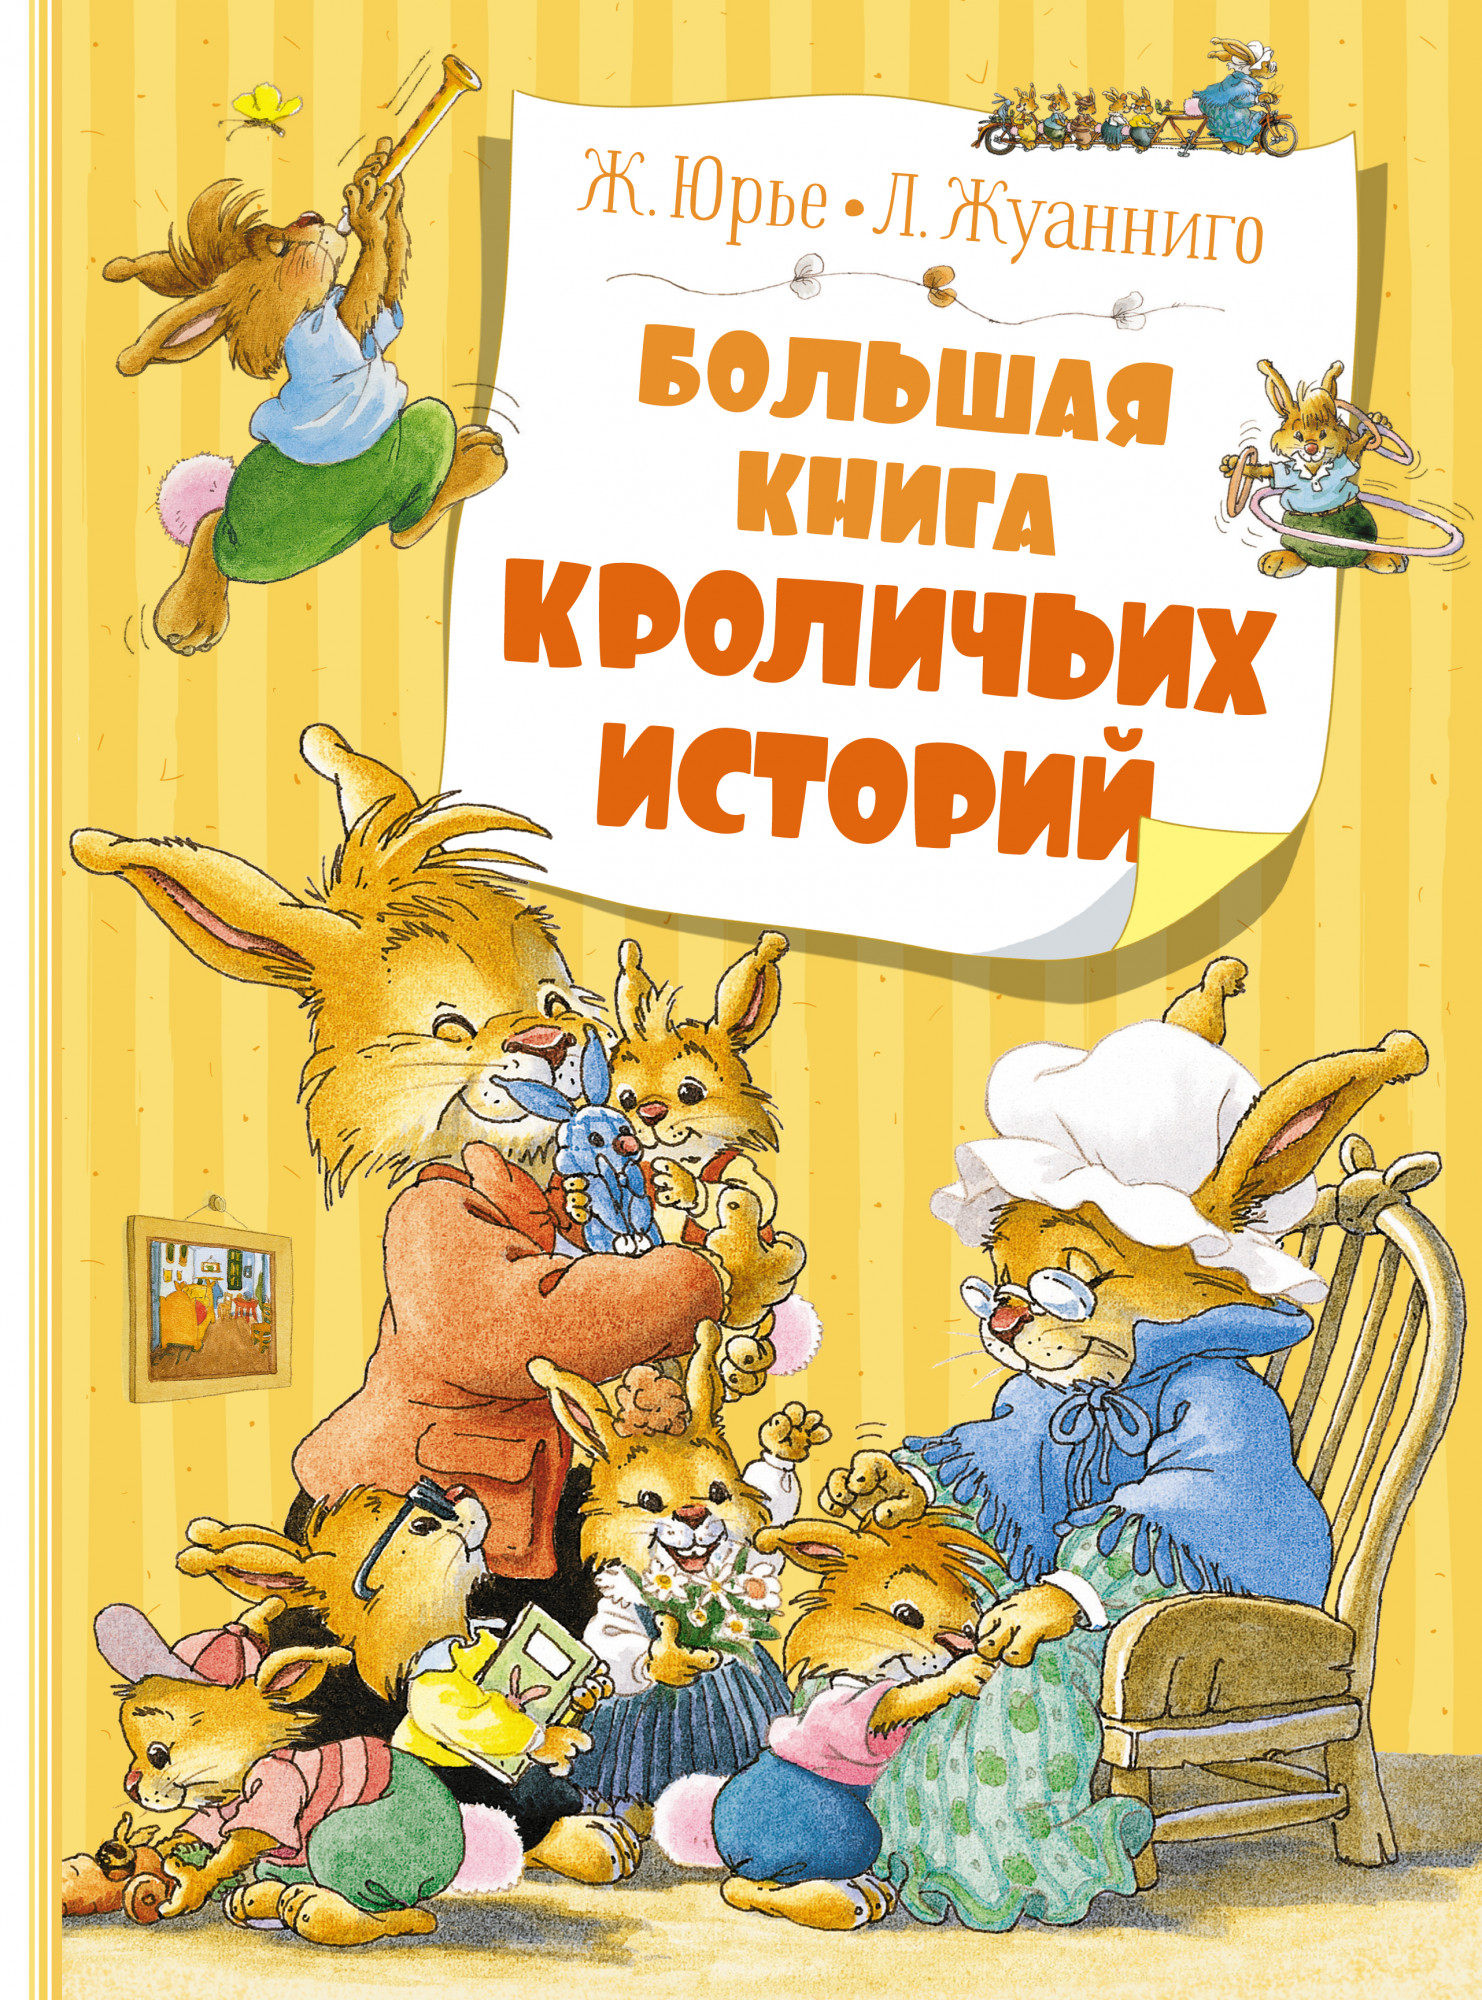 Юрье Женевьева Большая книга кроличьих историй (новое оформление) набор красная книга земли новое оформление шоколад кэт 12 как дожить до пенсии 60г